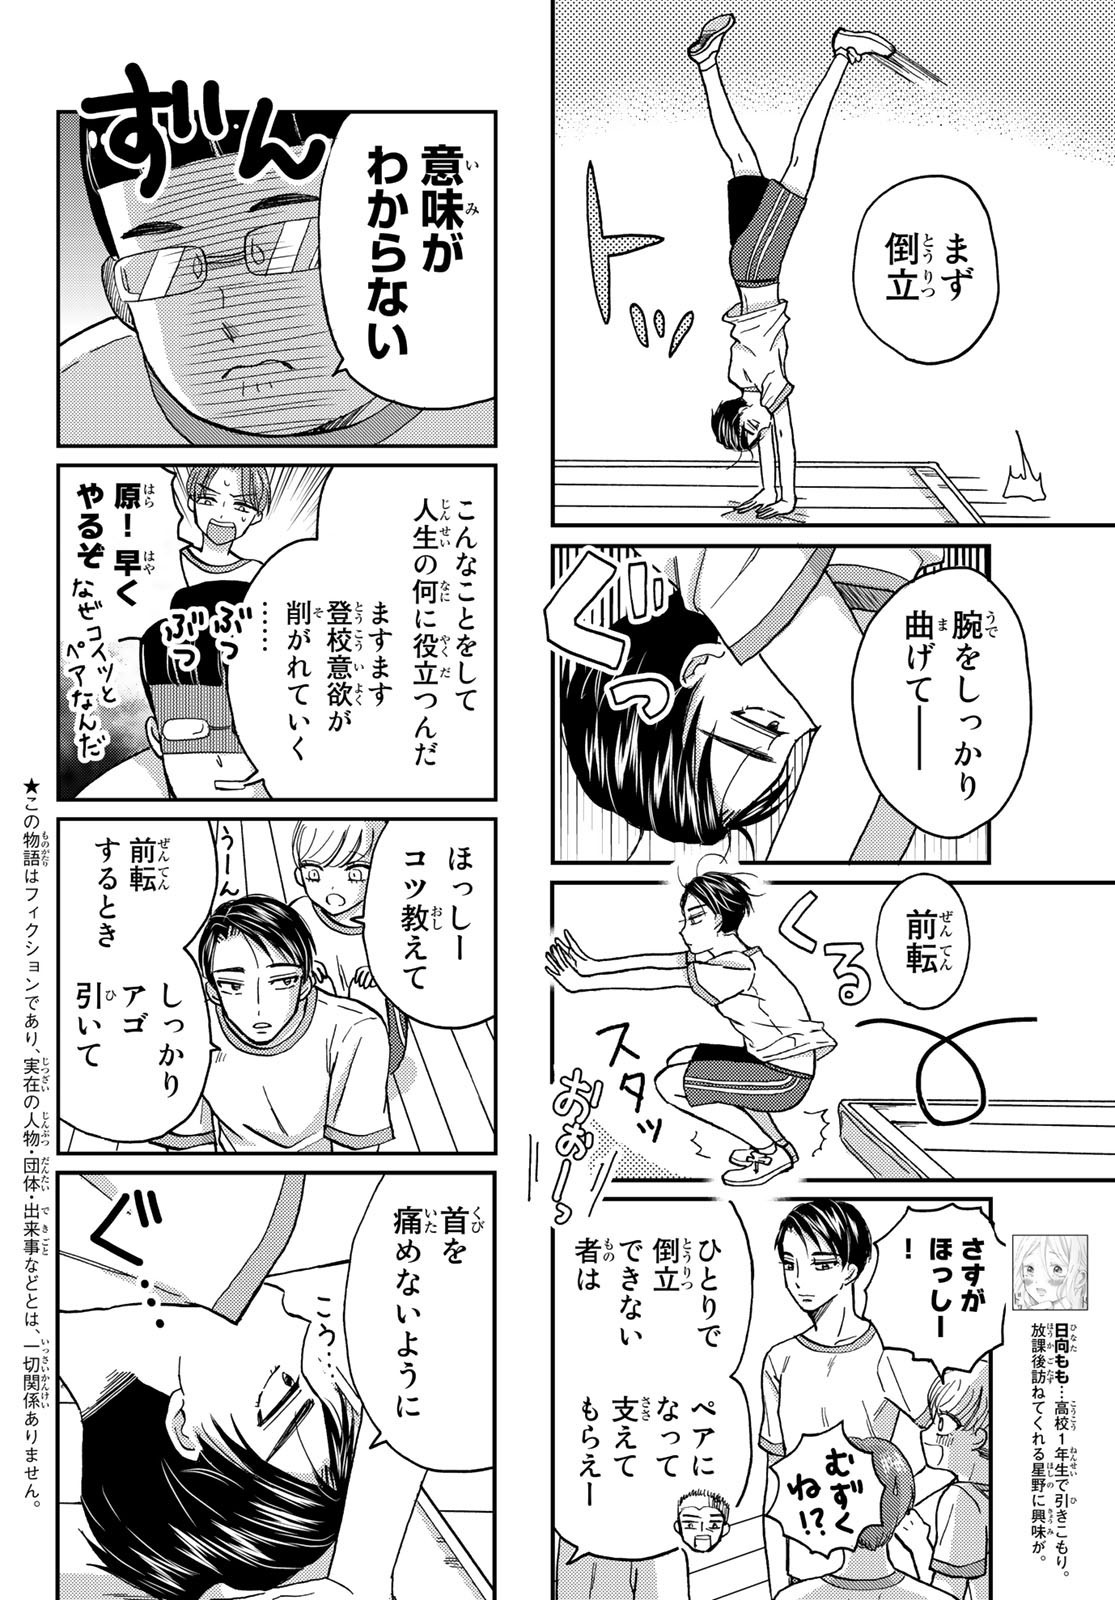 Hinata-san, Hoshino desu. - Chapter 009 - Page 2